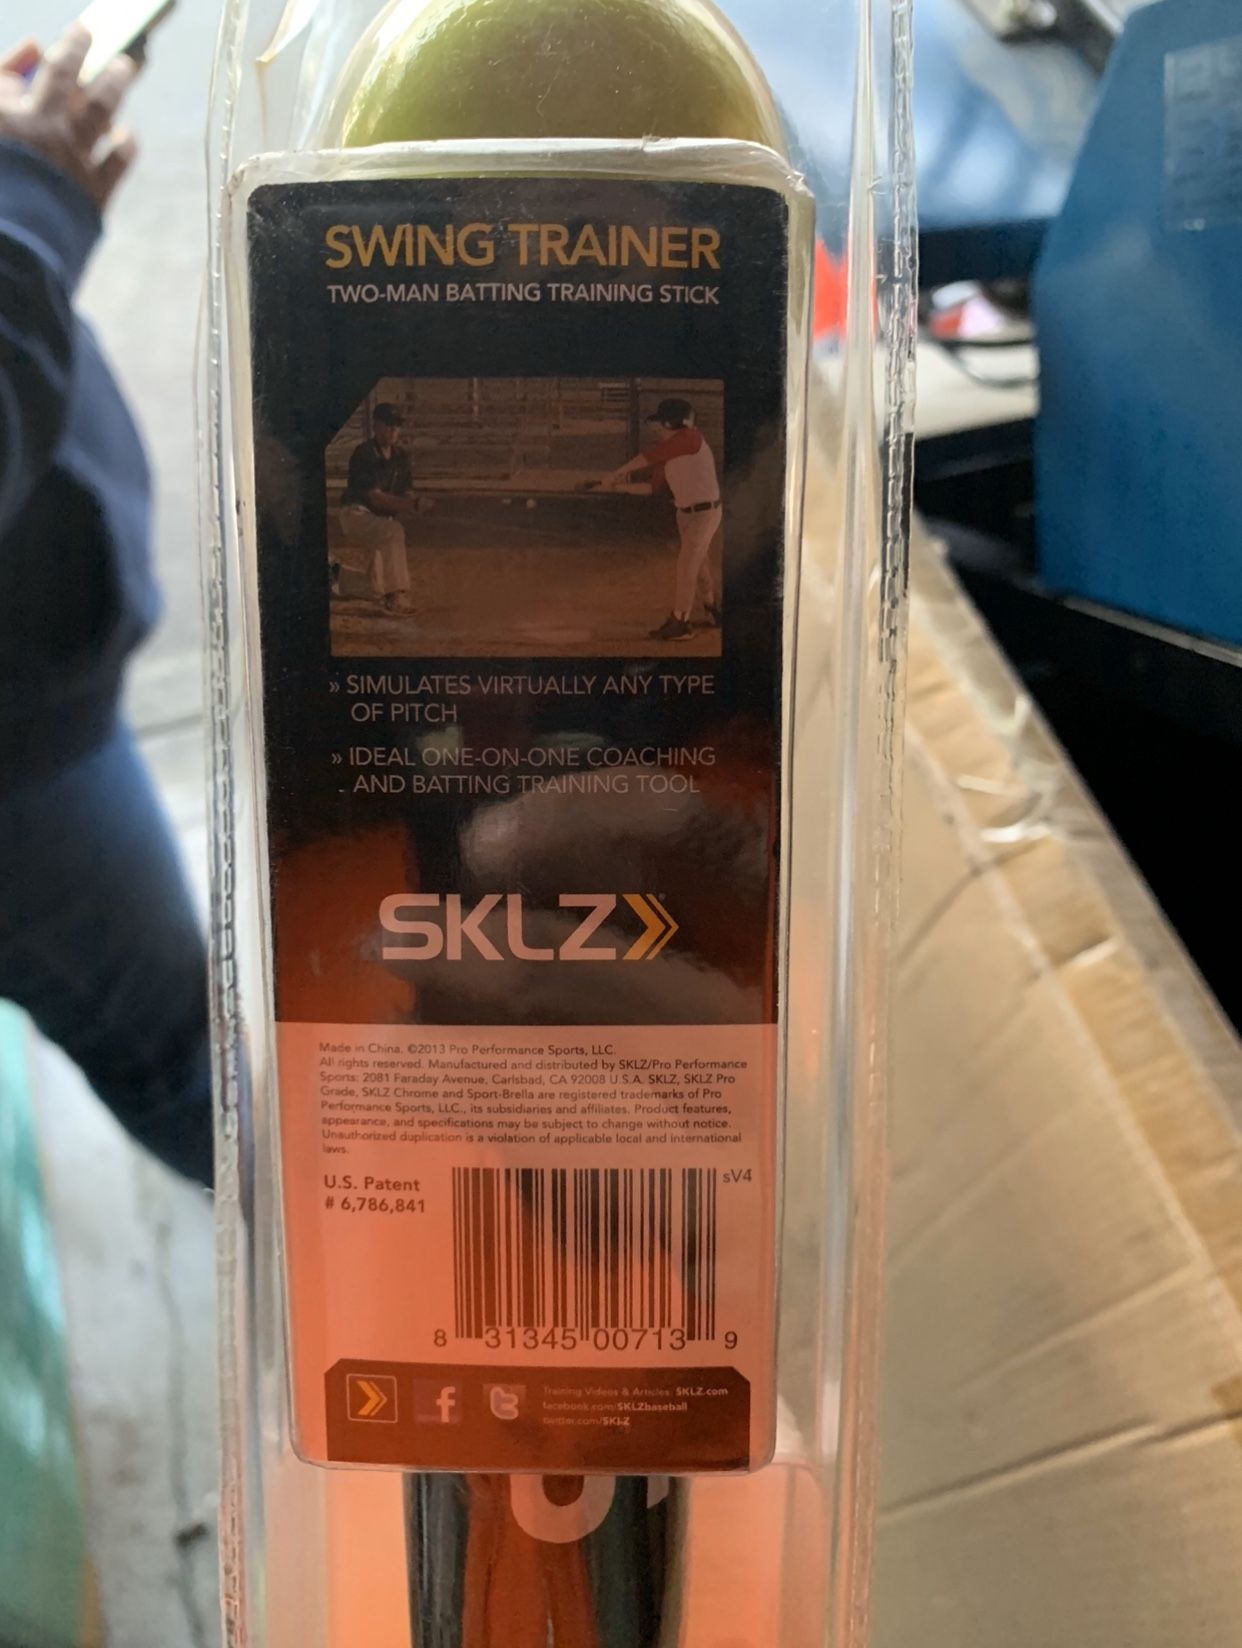 SKLZ Swing Trainer baseball batting